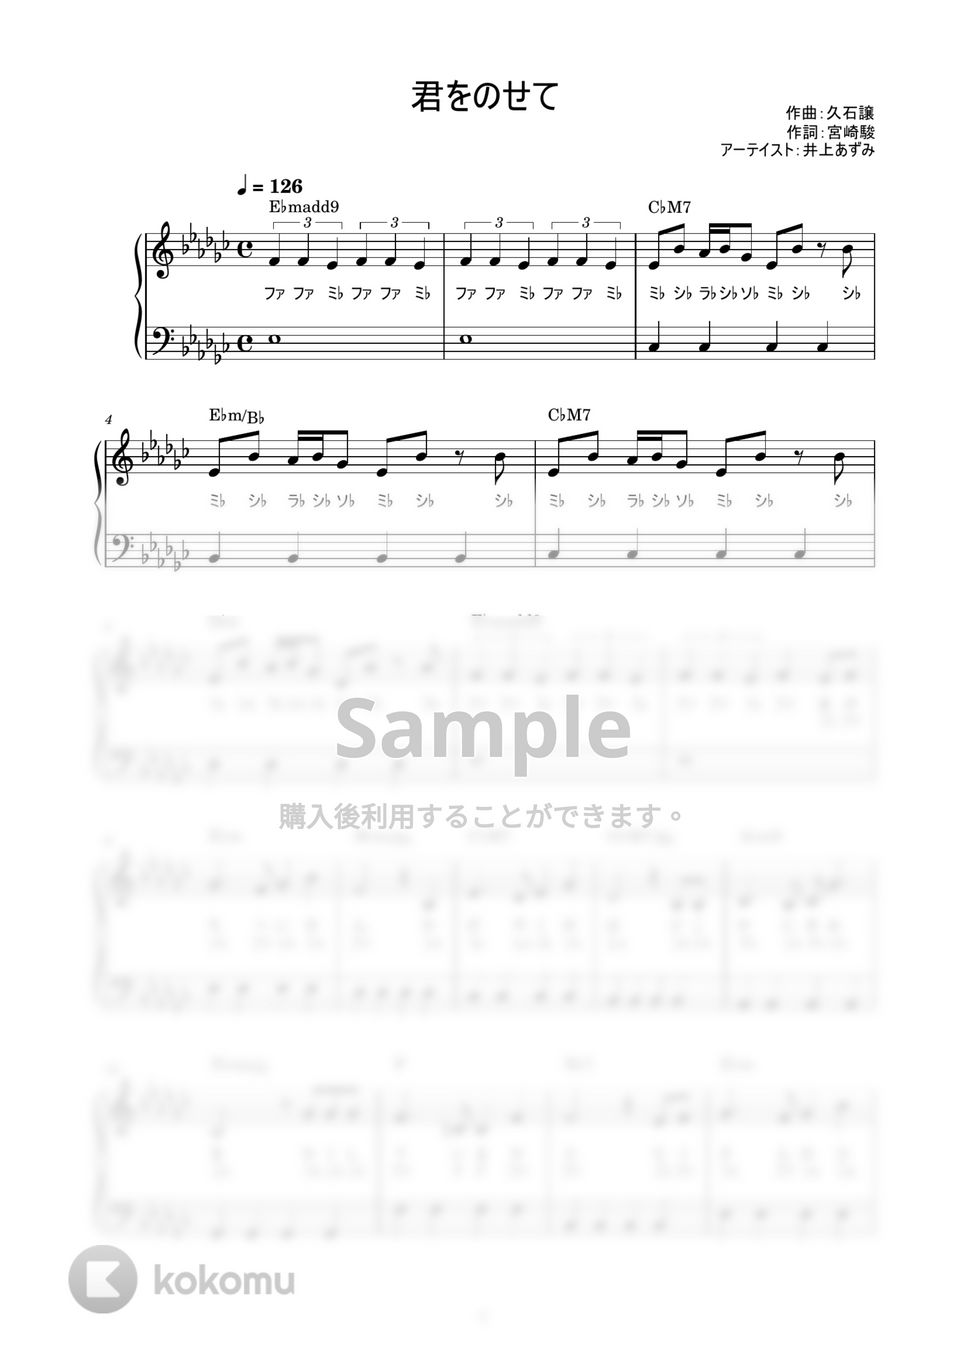 井上あずみ - 君をのせて (かんたん / 歌詞付き / ドレミ付き / 初心者) by piano.tokyo